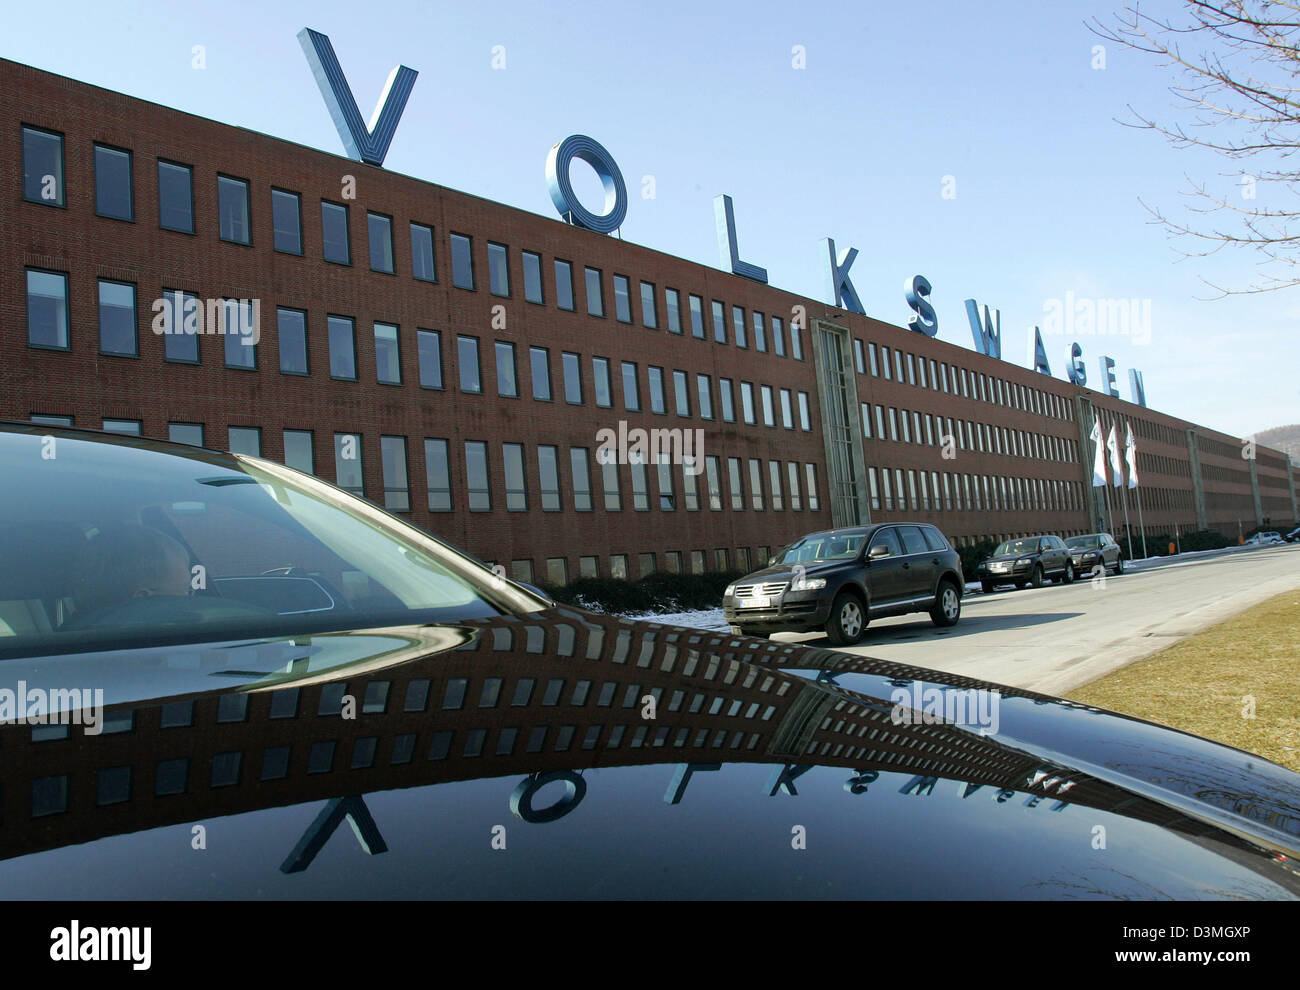 Le lettrage Volkswage se reflète dans le capot poli d'un VW Touareg par la société à son usine de production à Baunatal, Allemagne, mardi, 14 mars 2006. Au cours d'une réunion du comité d'entreprise les employés ont été informés de l'entreprise plans de reconstruction. Cependant l'consesequences pour l'usine de Kassel ne sont pas connus jusqu'à présent. Actuellement 15 000 personnes produisent en Baunatal compo voiture Banque D'Images